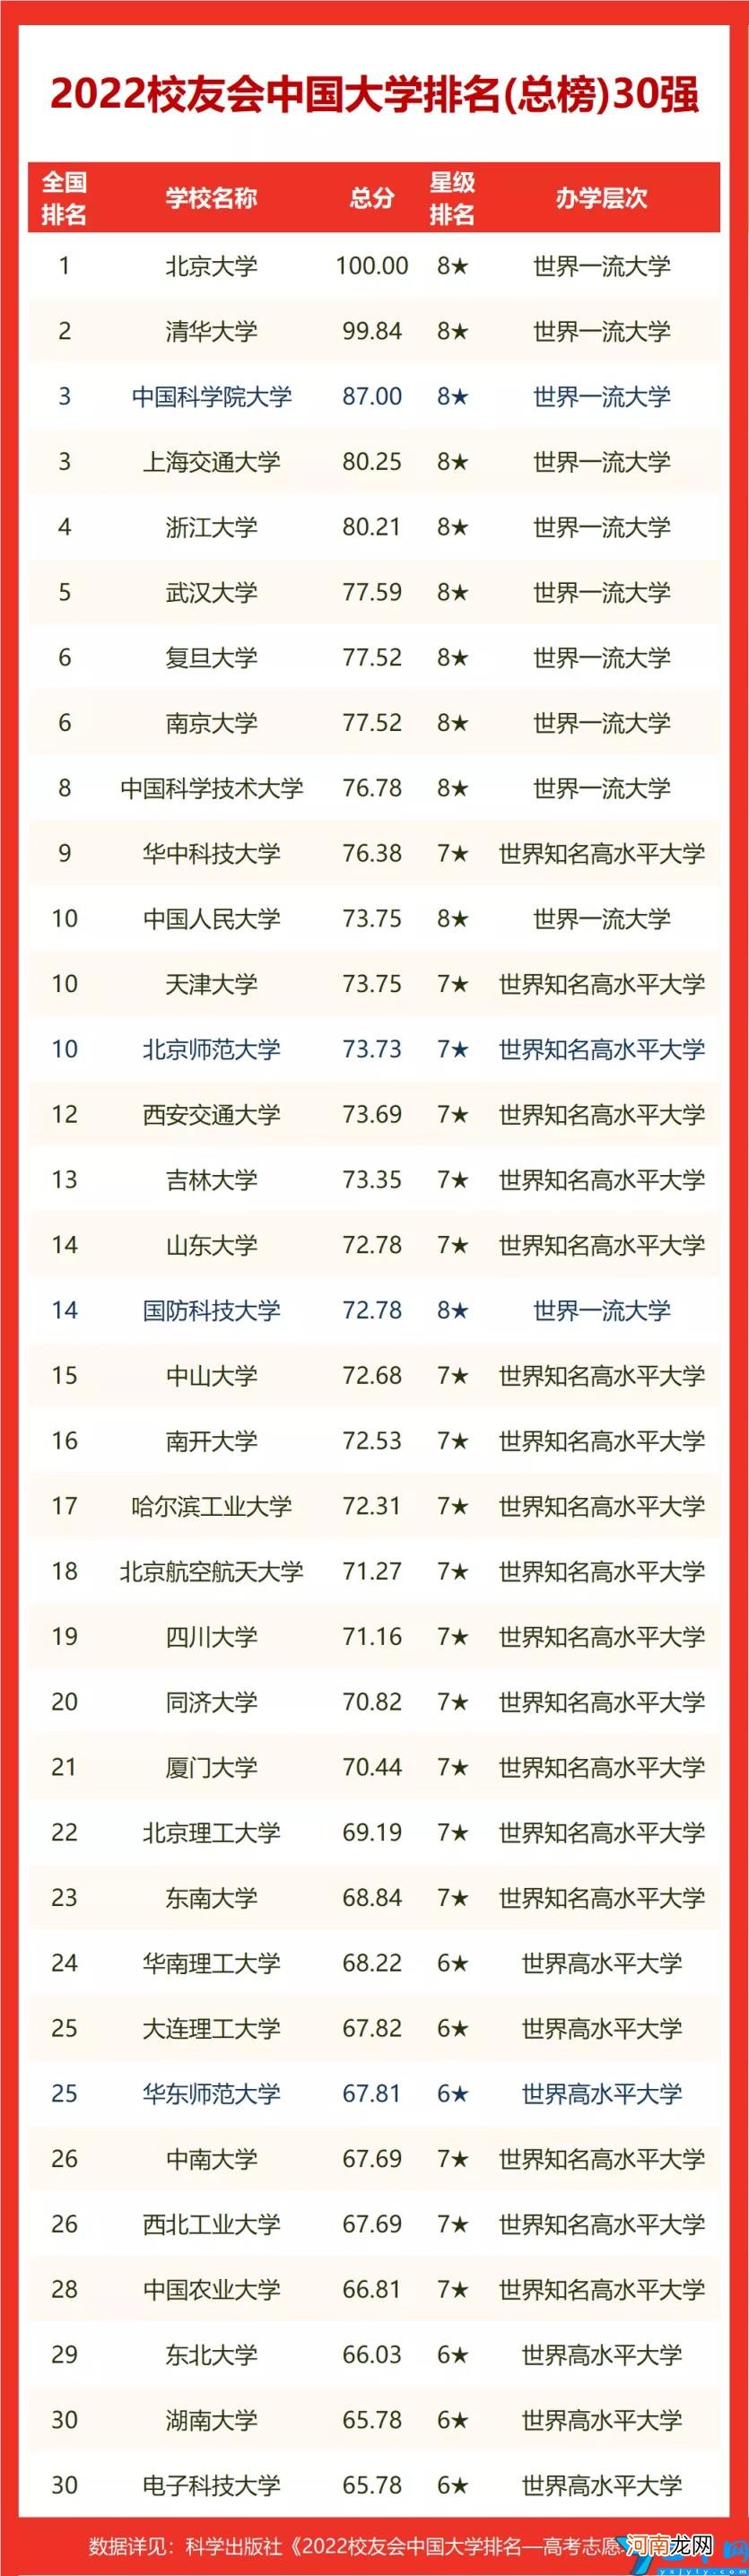 浙江省高校排行榜前十名 2022年浙江的大学排名一览表